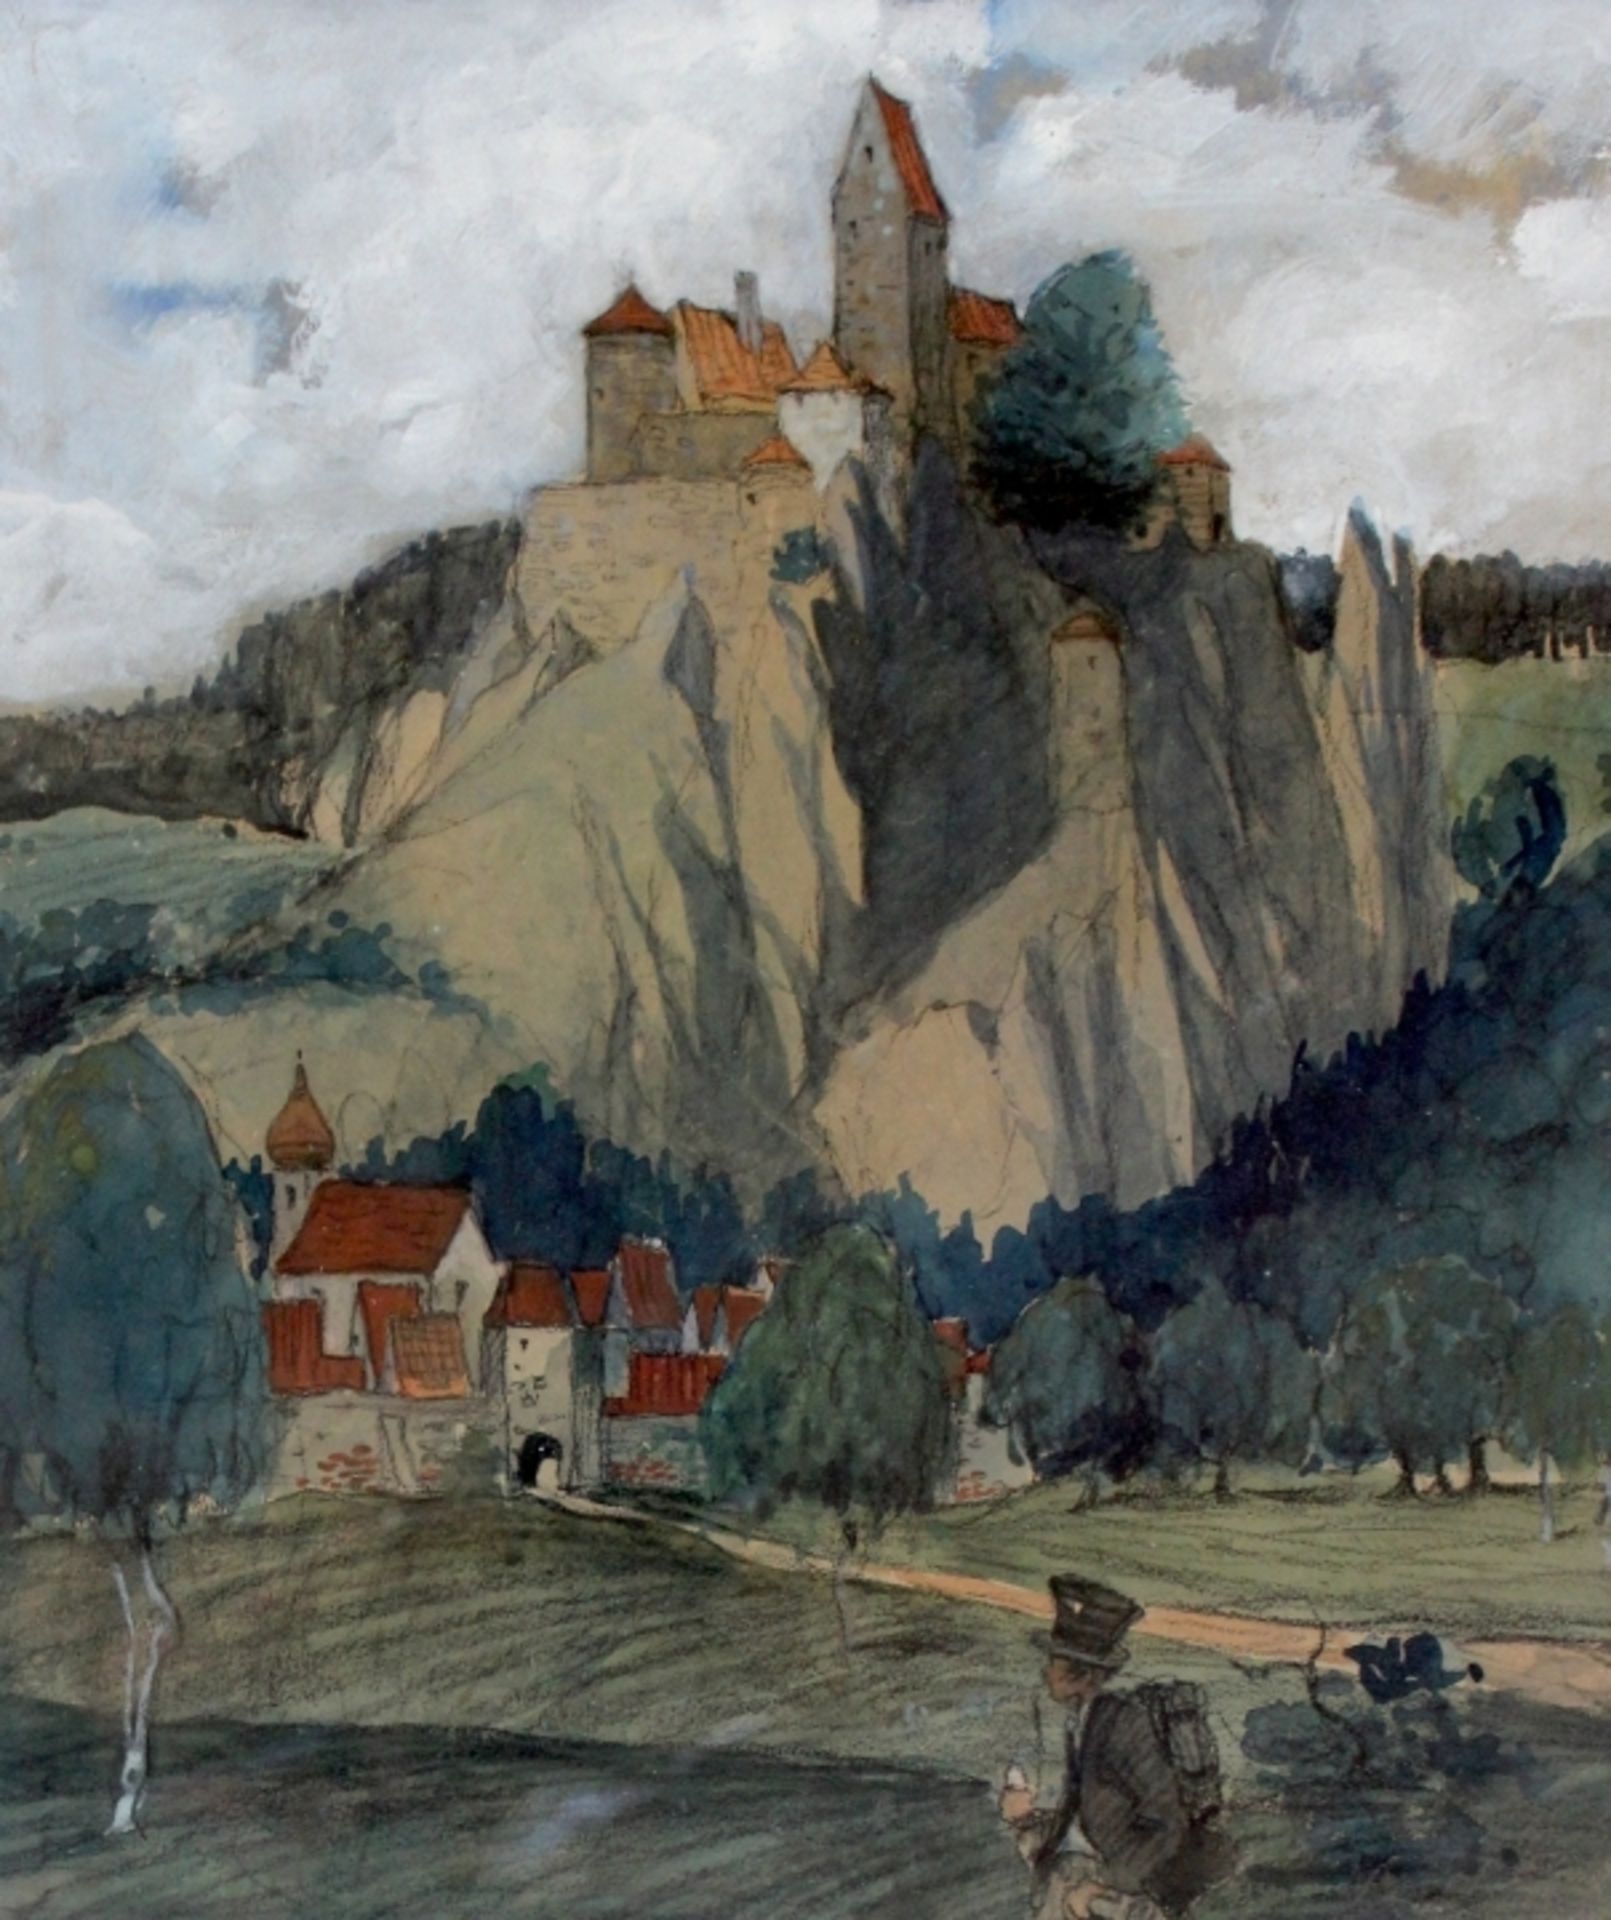 Gemälde - Max Wissner (1873 Geiersberg/Böhmen - 1959 Regensburg) "Wanderer vor Schlossanlage", 1905,